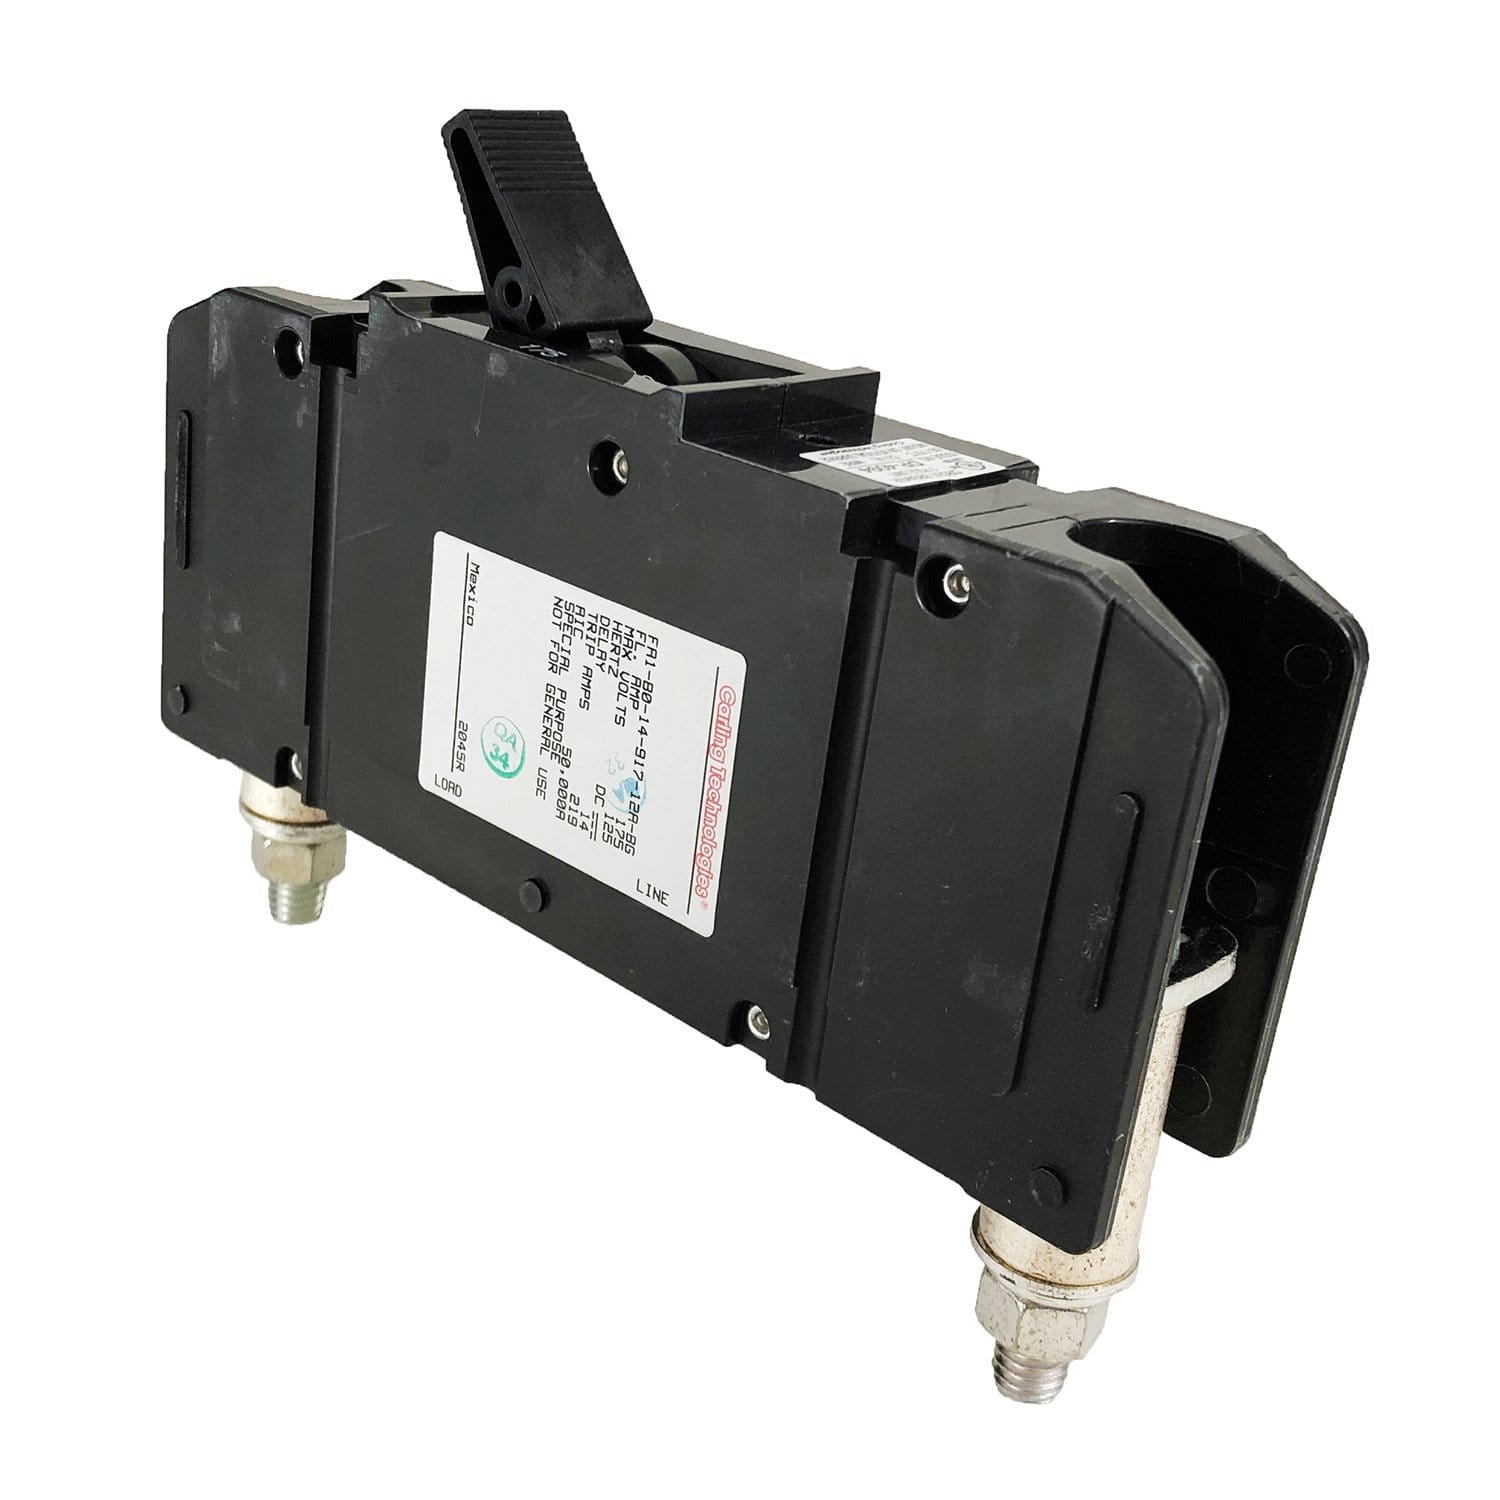 日東工業 PNL20-36-RF12JC アイセーバ標準電灯分電盤 [OTH40916